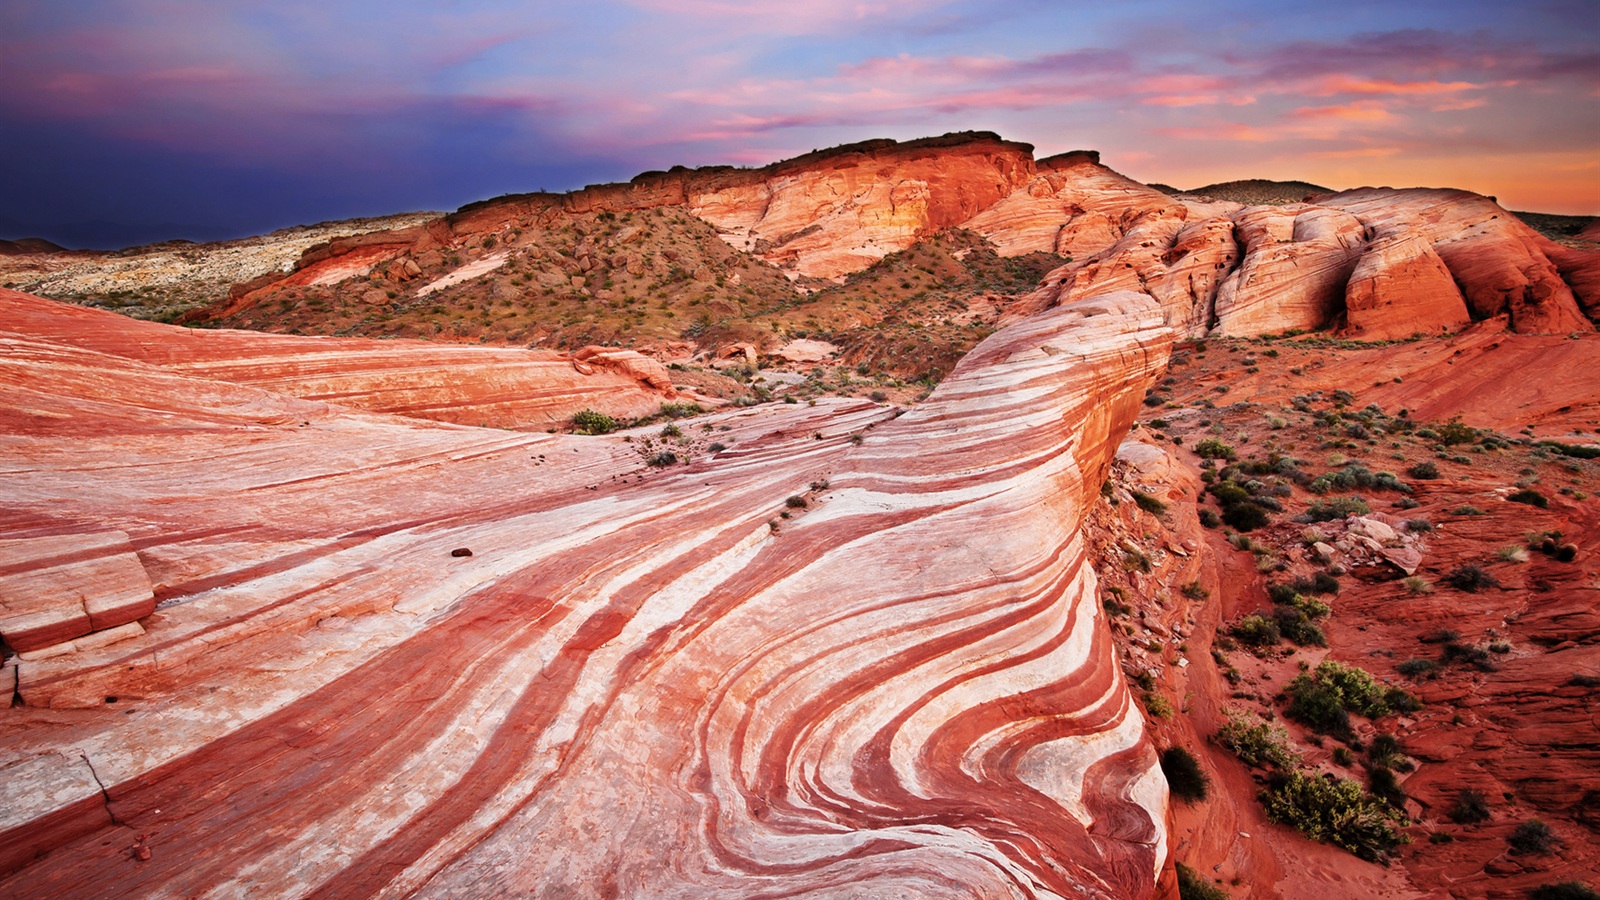 Cliff red rock desert sunset scenery Wallpaper 1600x900